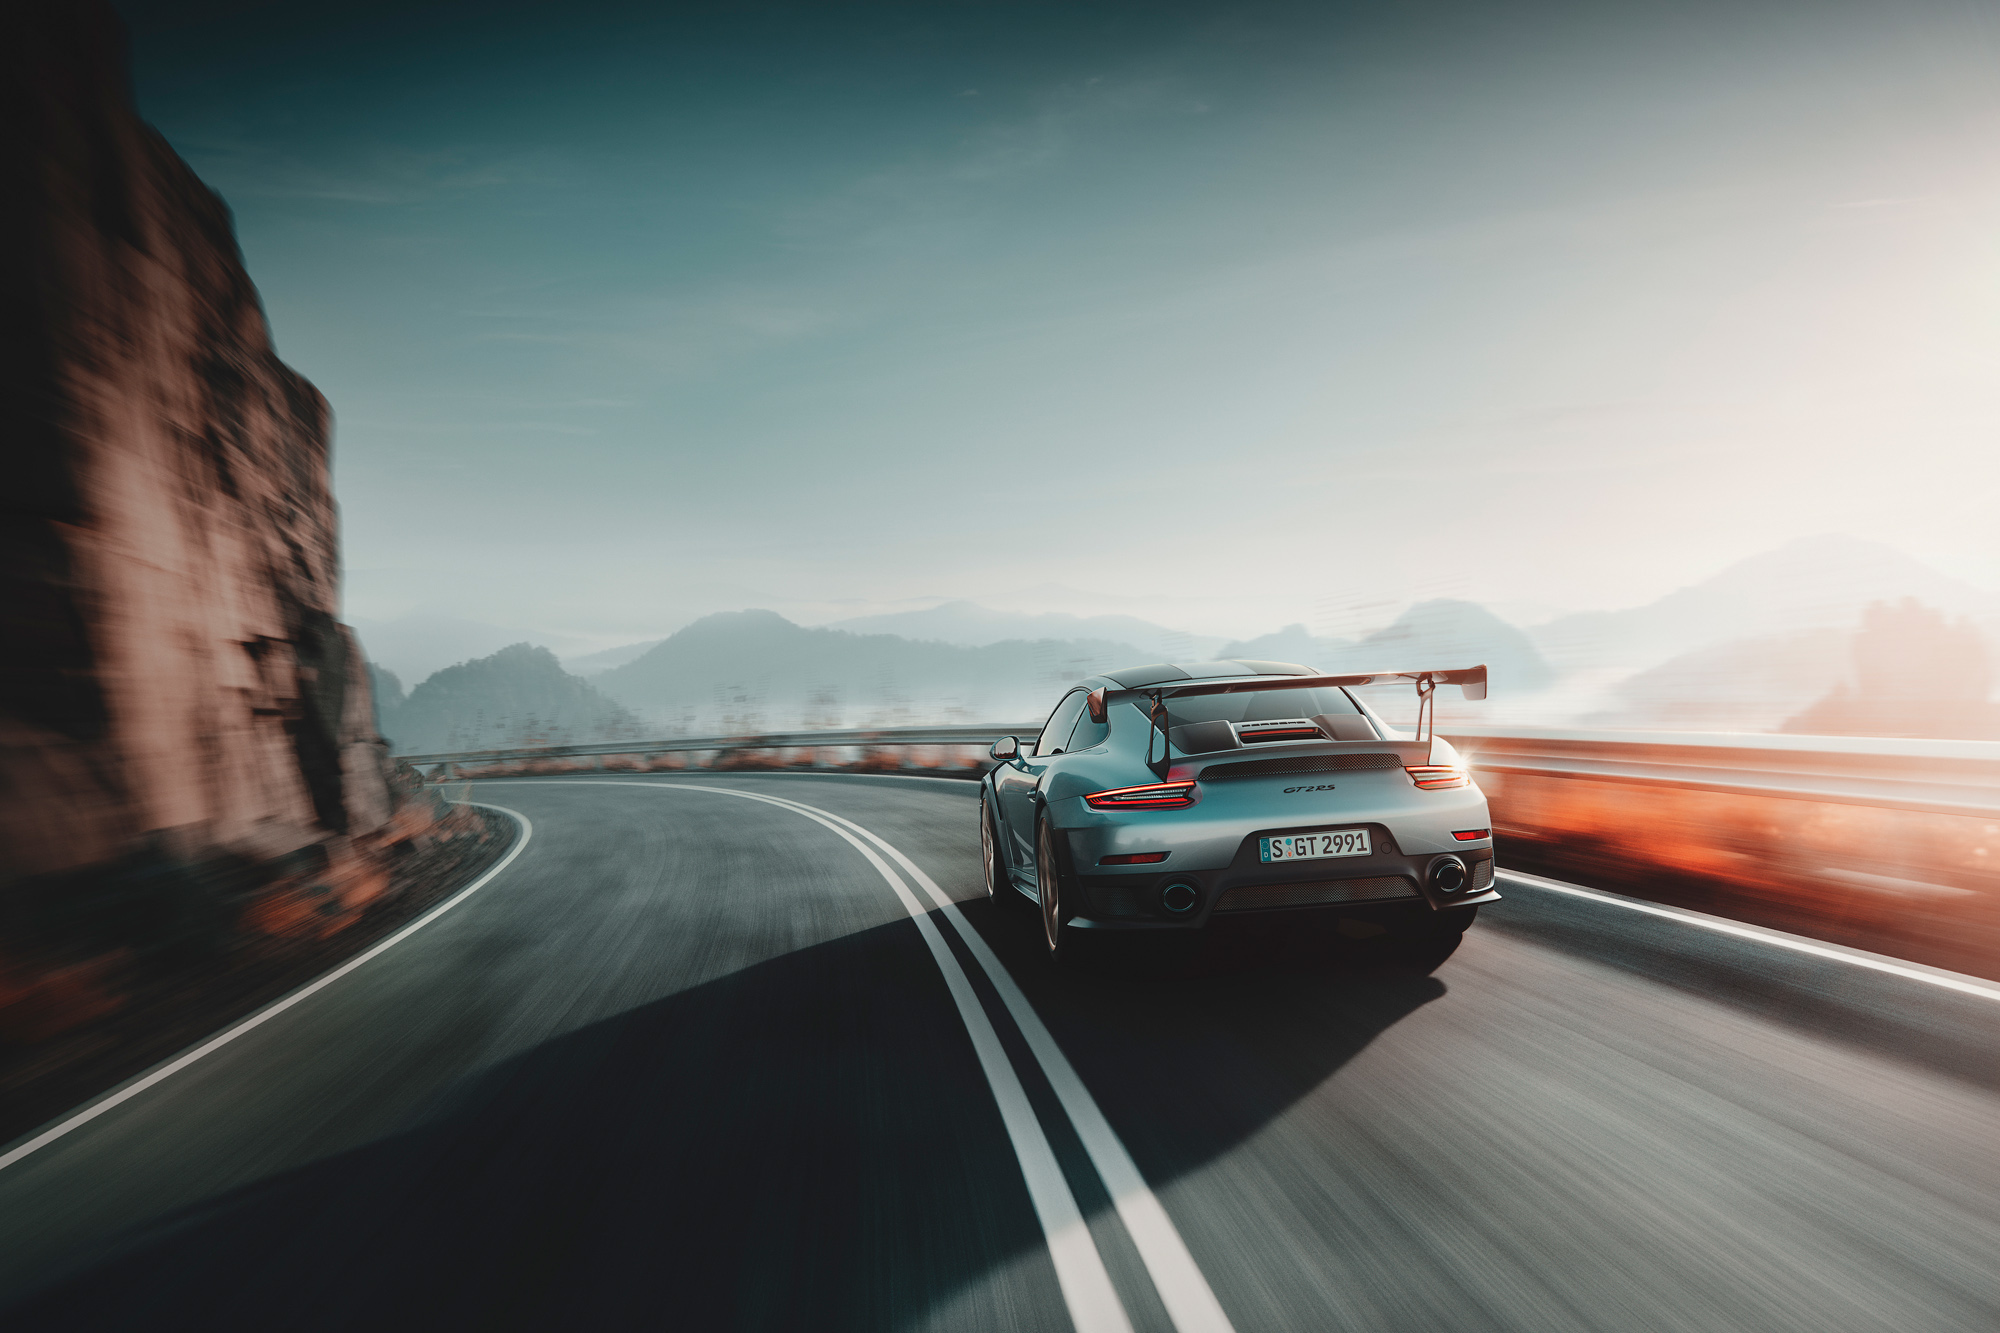 Серебристый Porsche 911 Gt2 мчится по дороге на обрыве горы